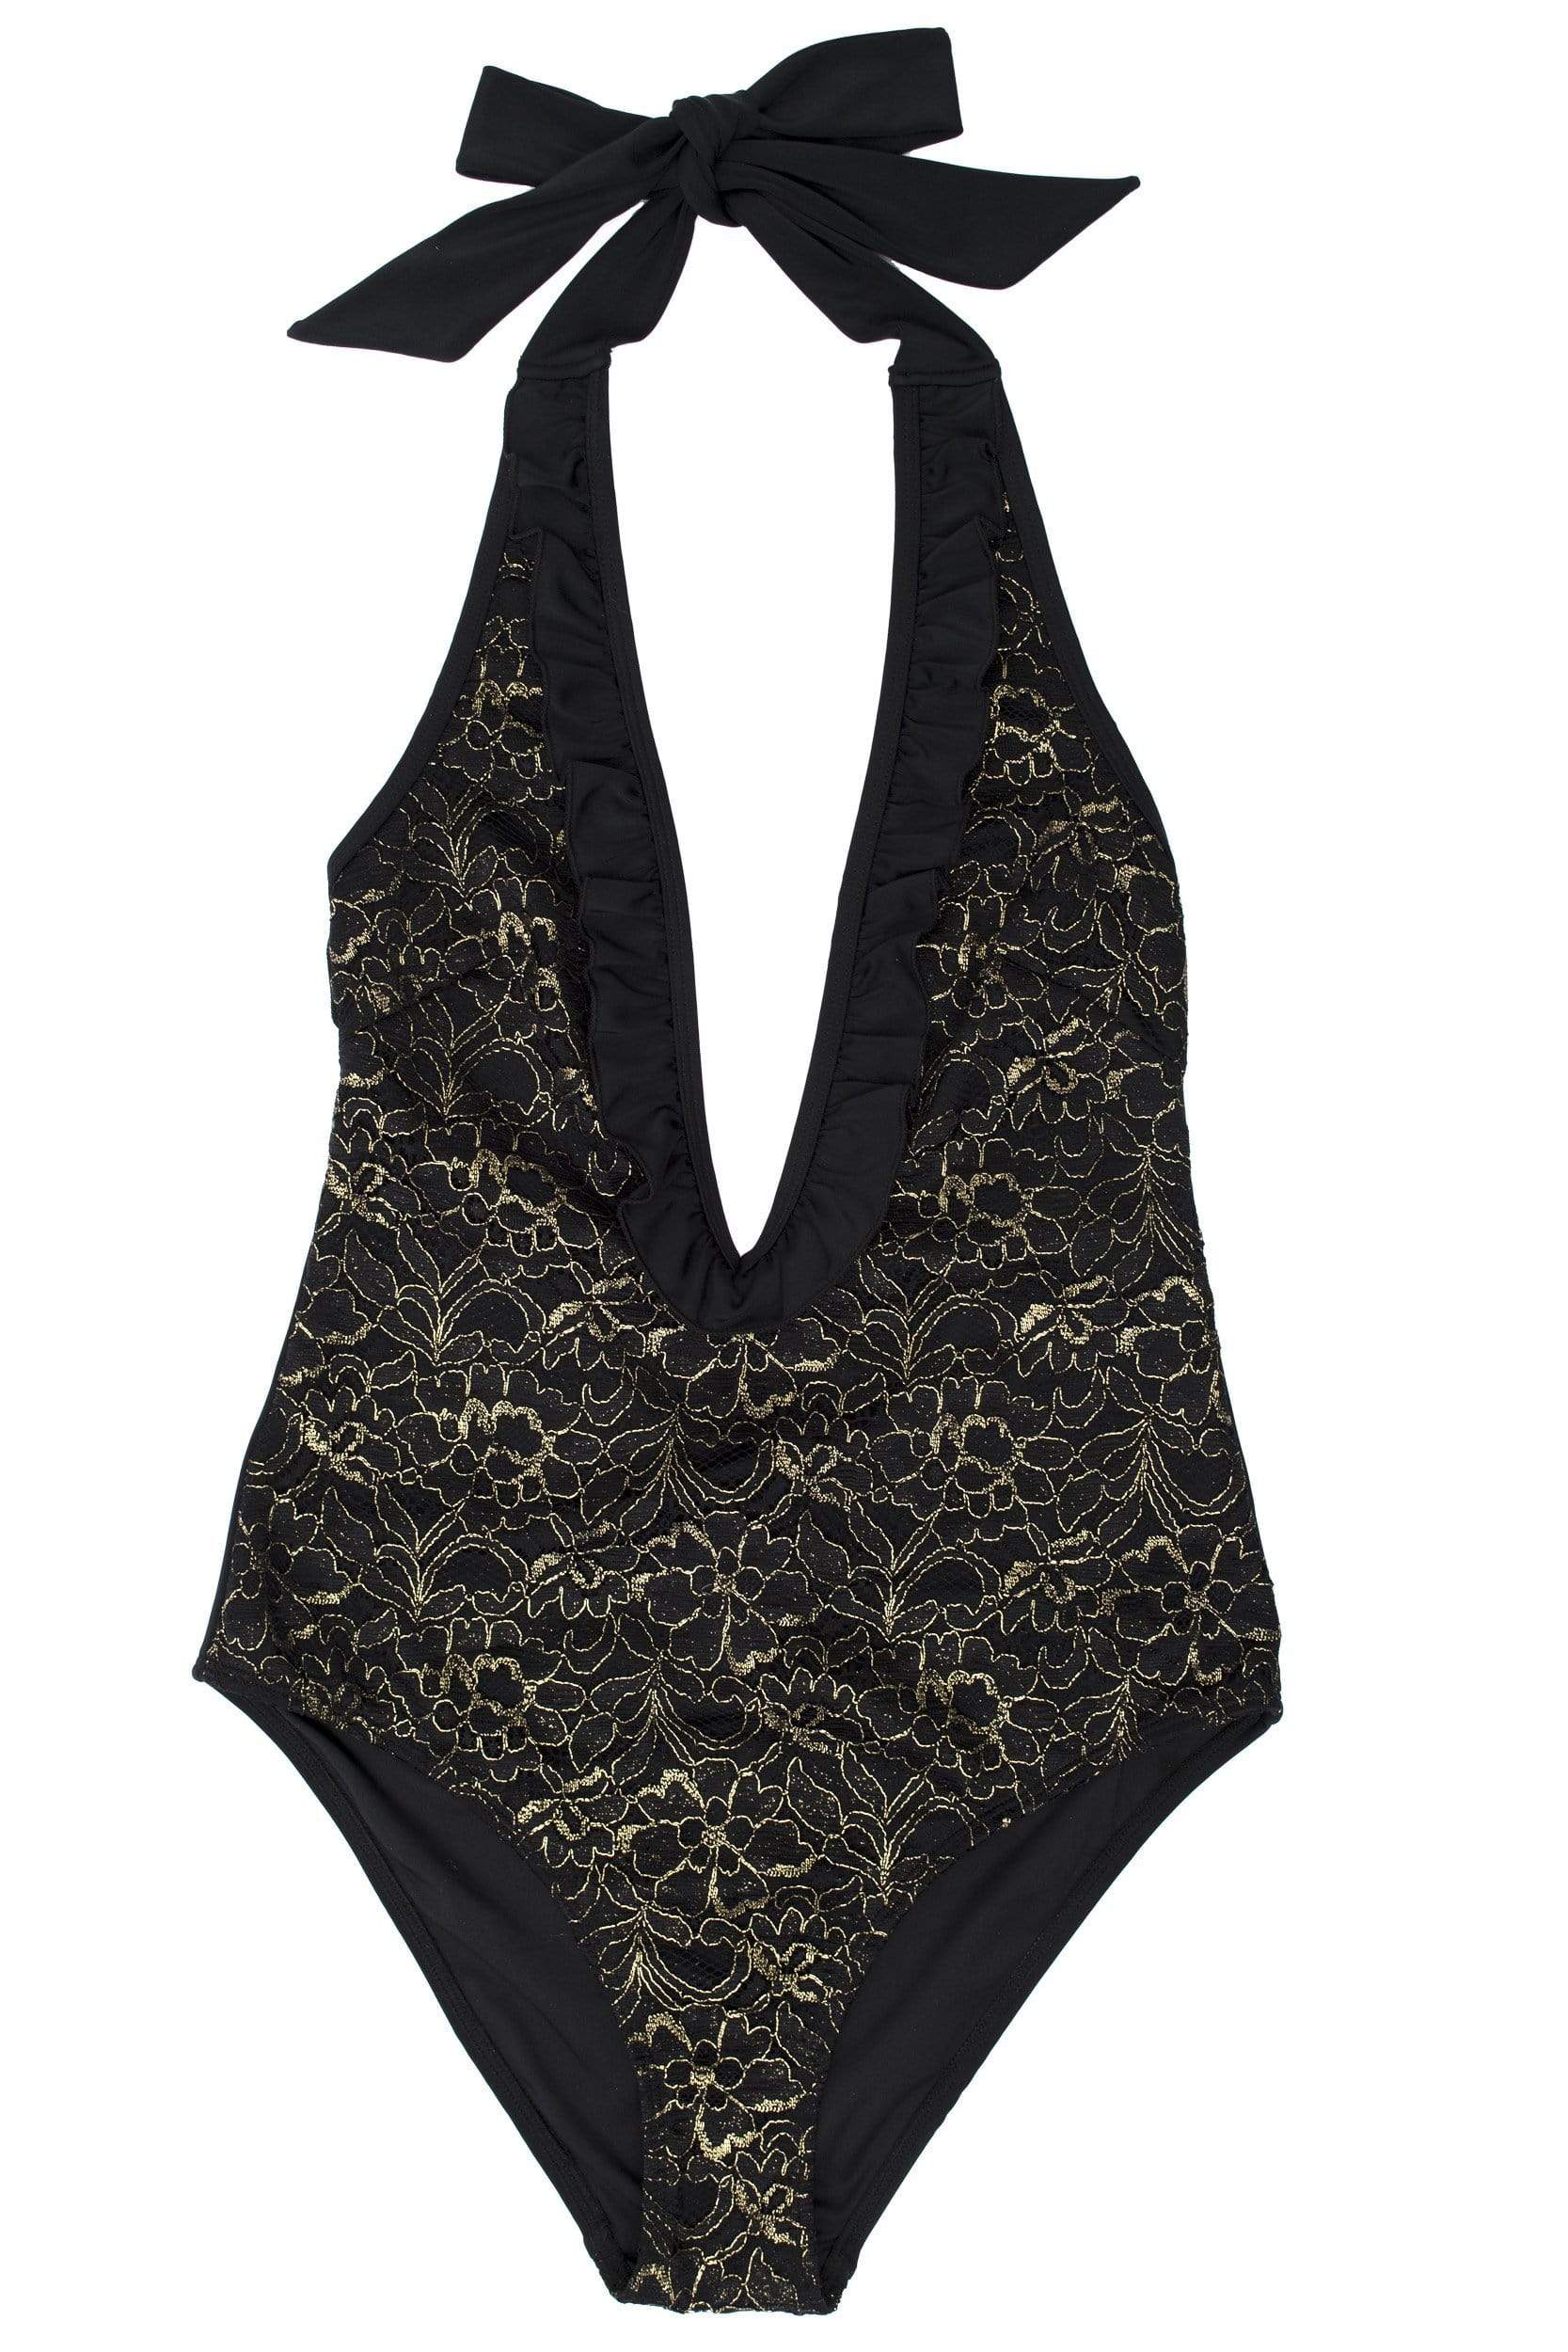 Leah gold lace plunge swimsuit